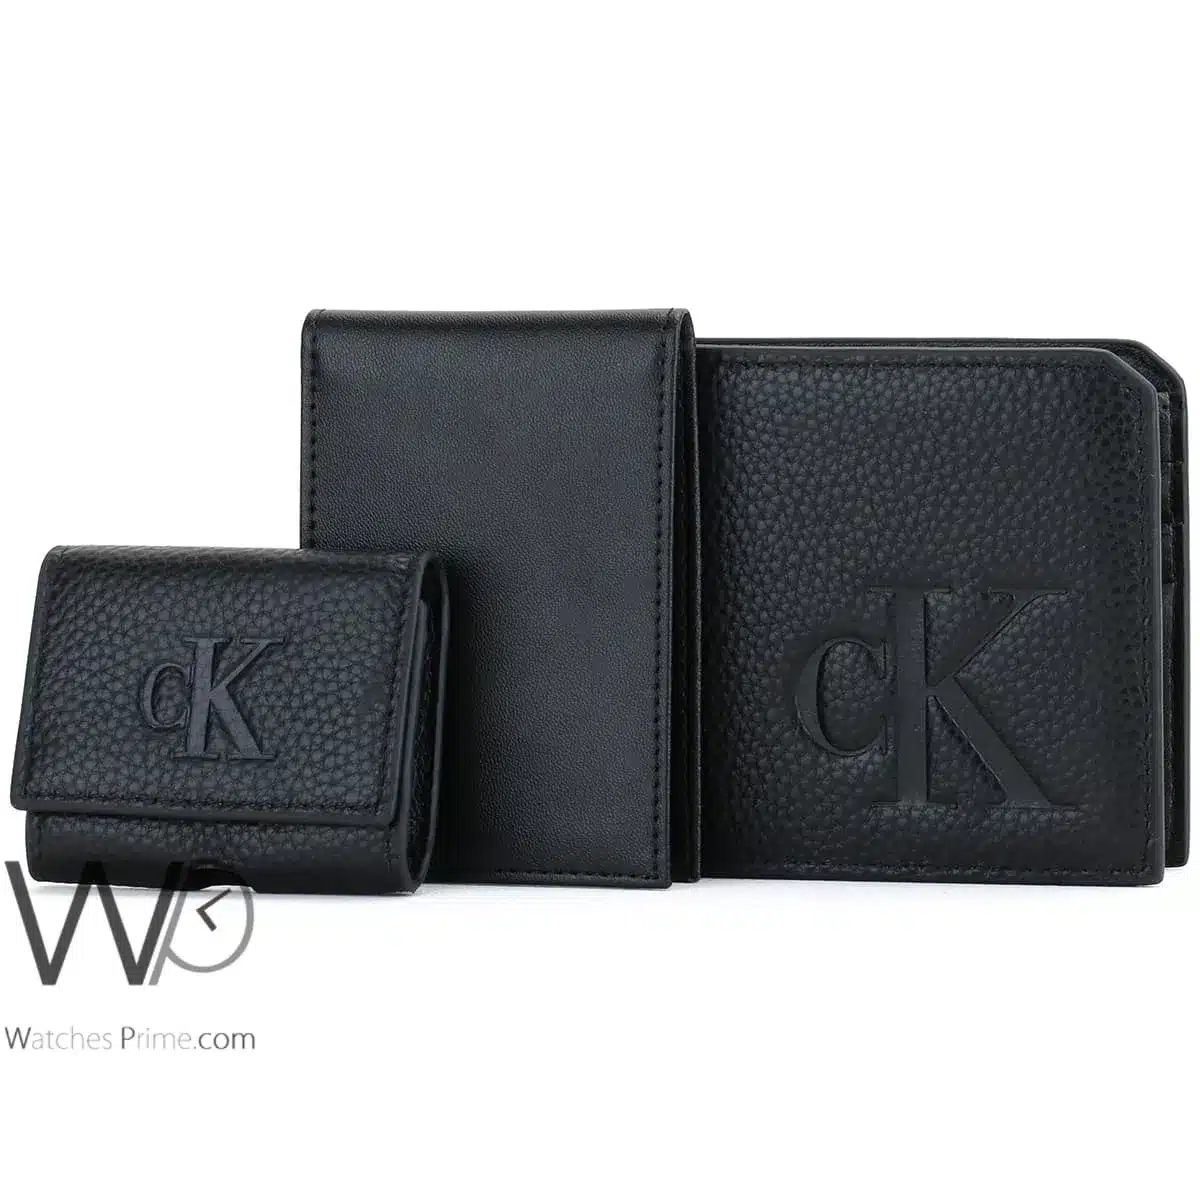 Calvin Klein CK Wallet Card Holder keychain | Watches Prime